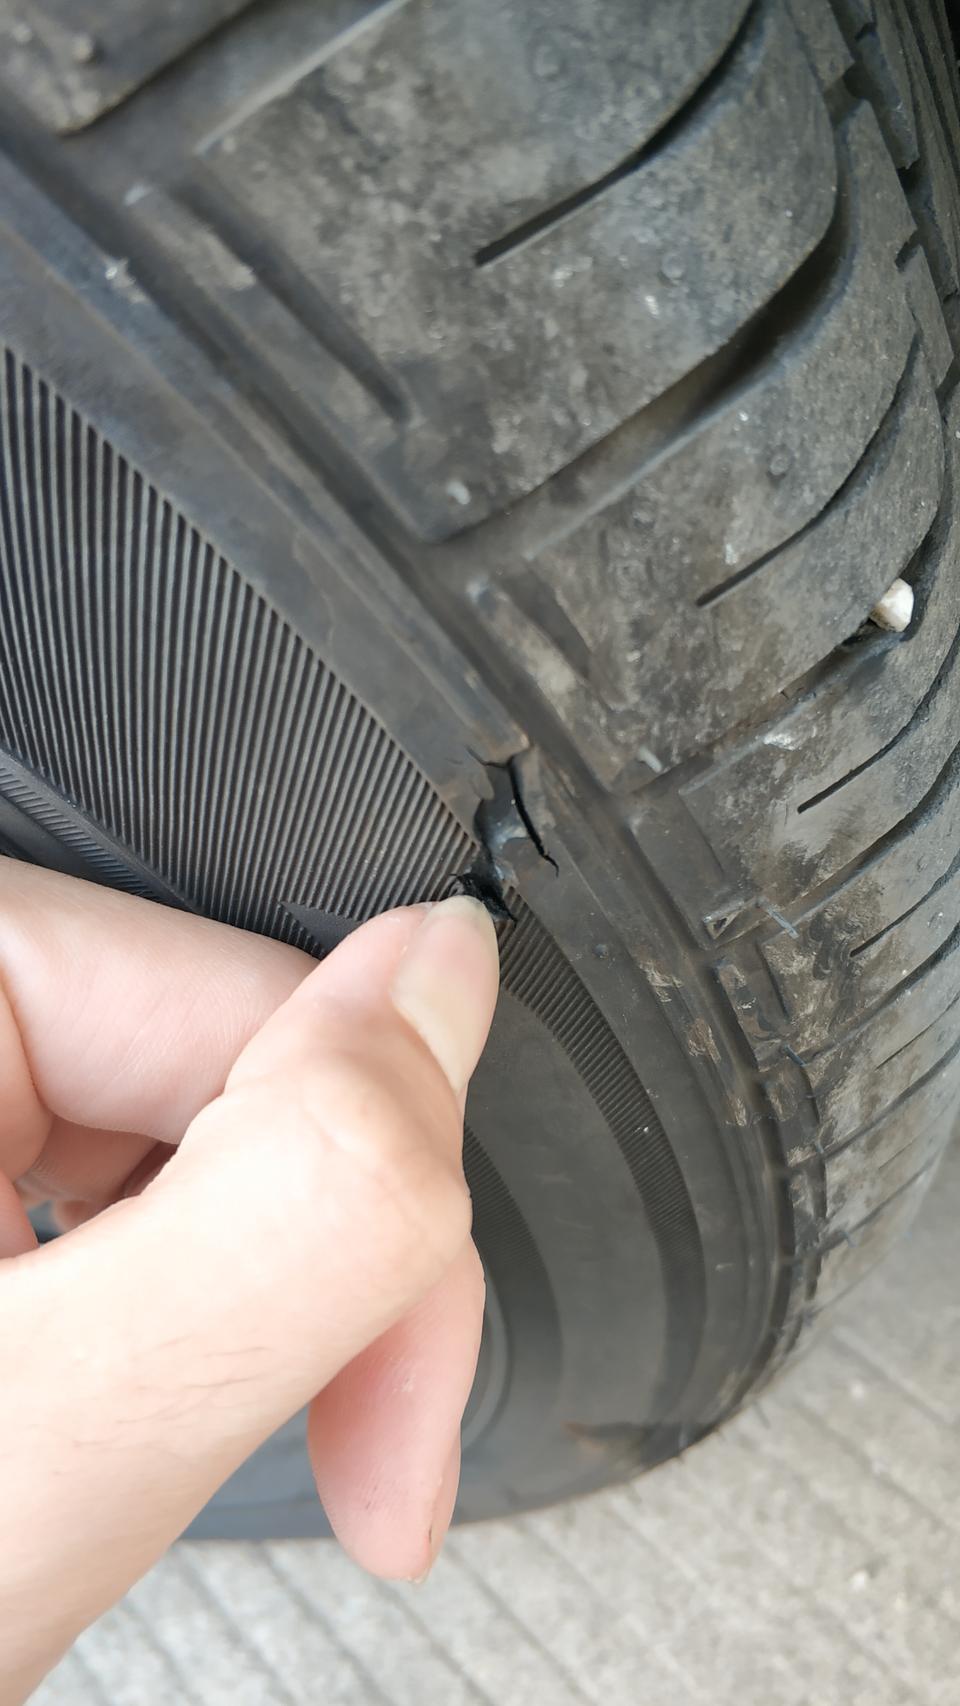 雷凌胎壁受损有没有问题需不需要更换轮胎